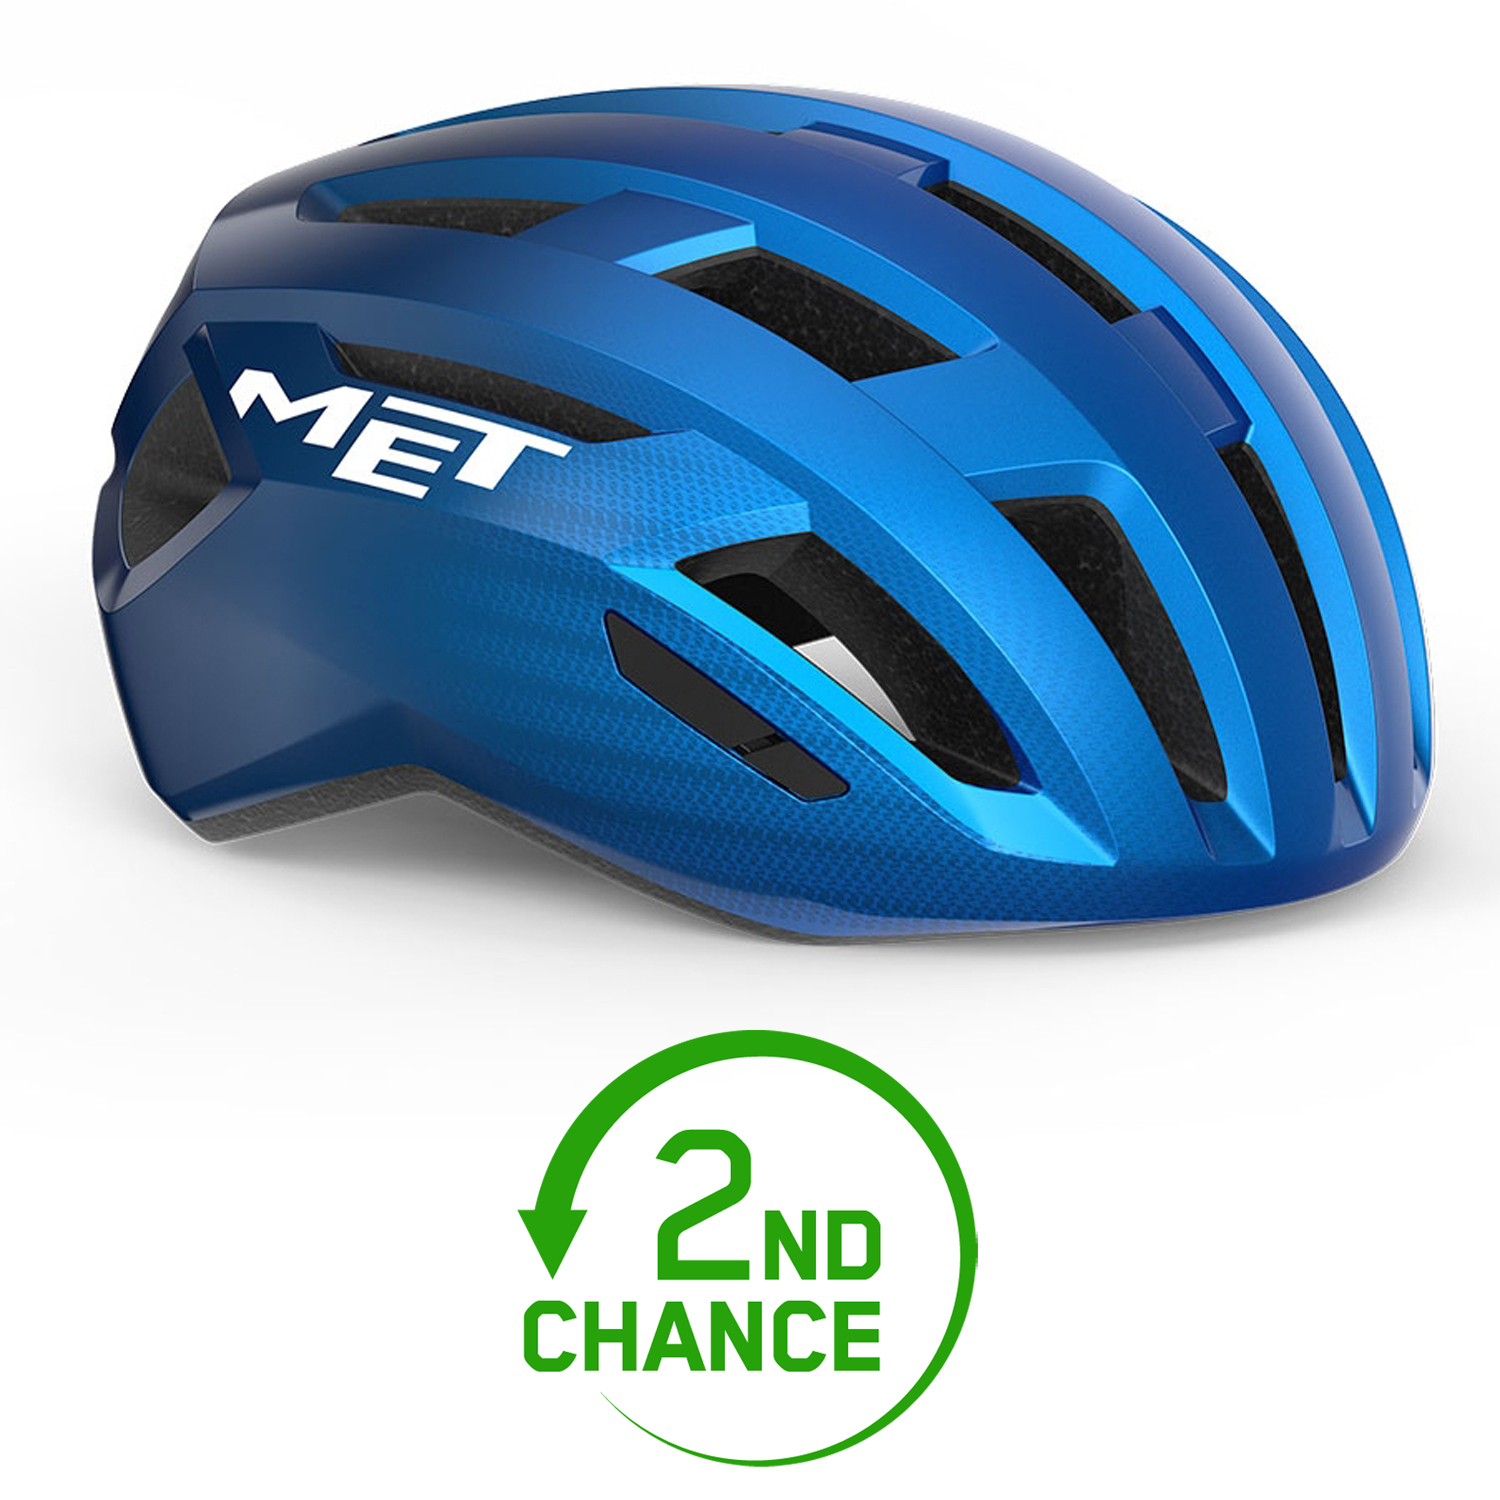 Produktbild von MET Vinci MIPS Helm - Blue Metallic/Glossy - B-Ware